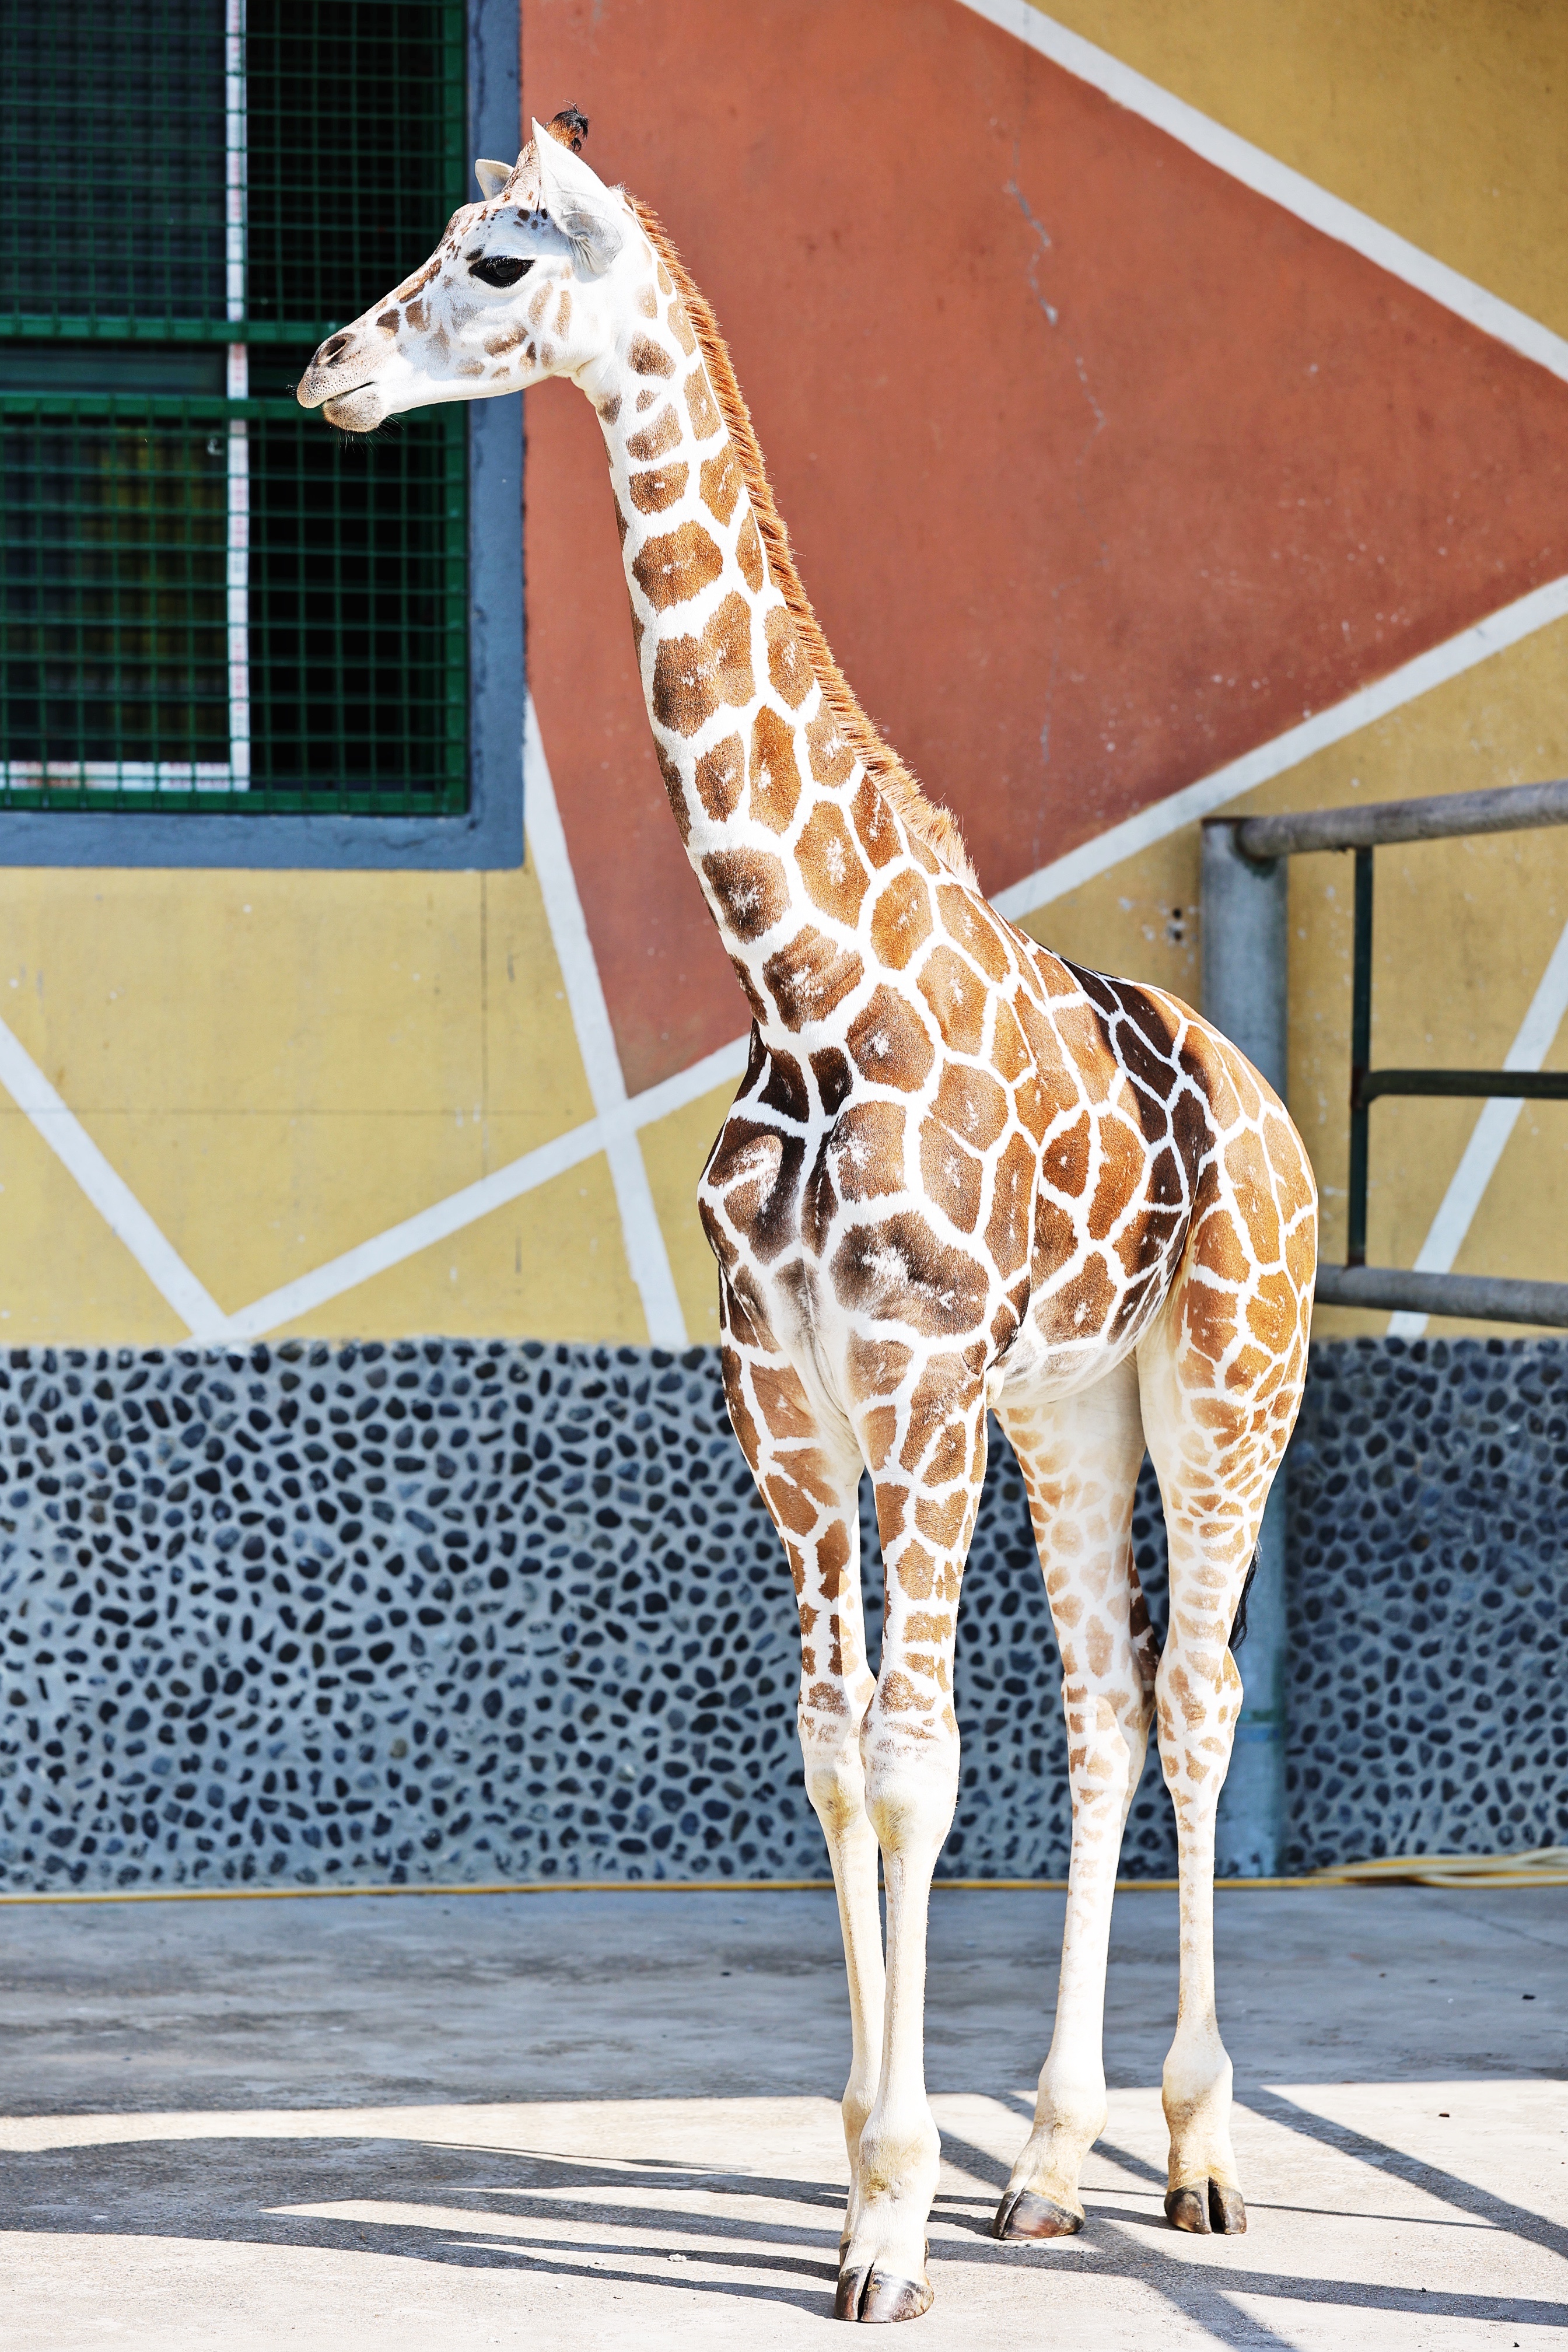 无锡动物园迎来长颈鹿宝宝,秋趣动物园又添新乐趣